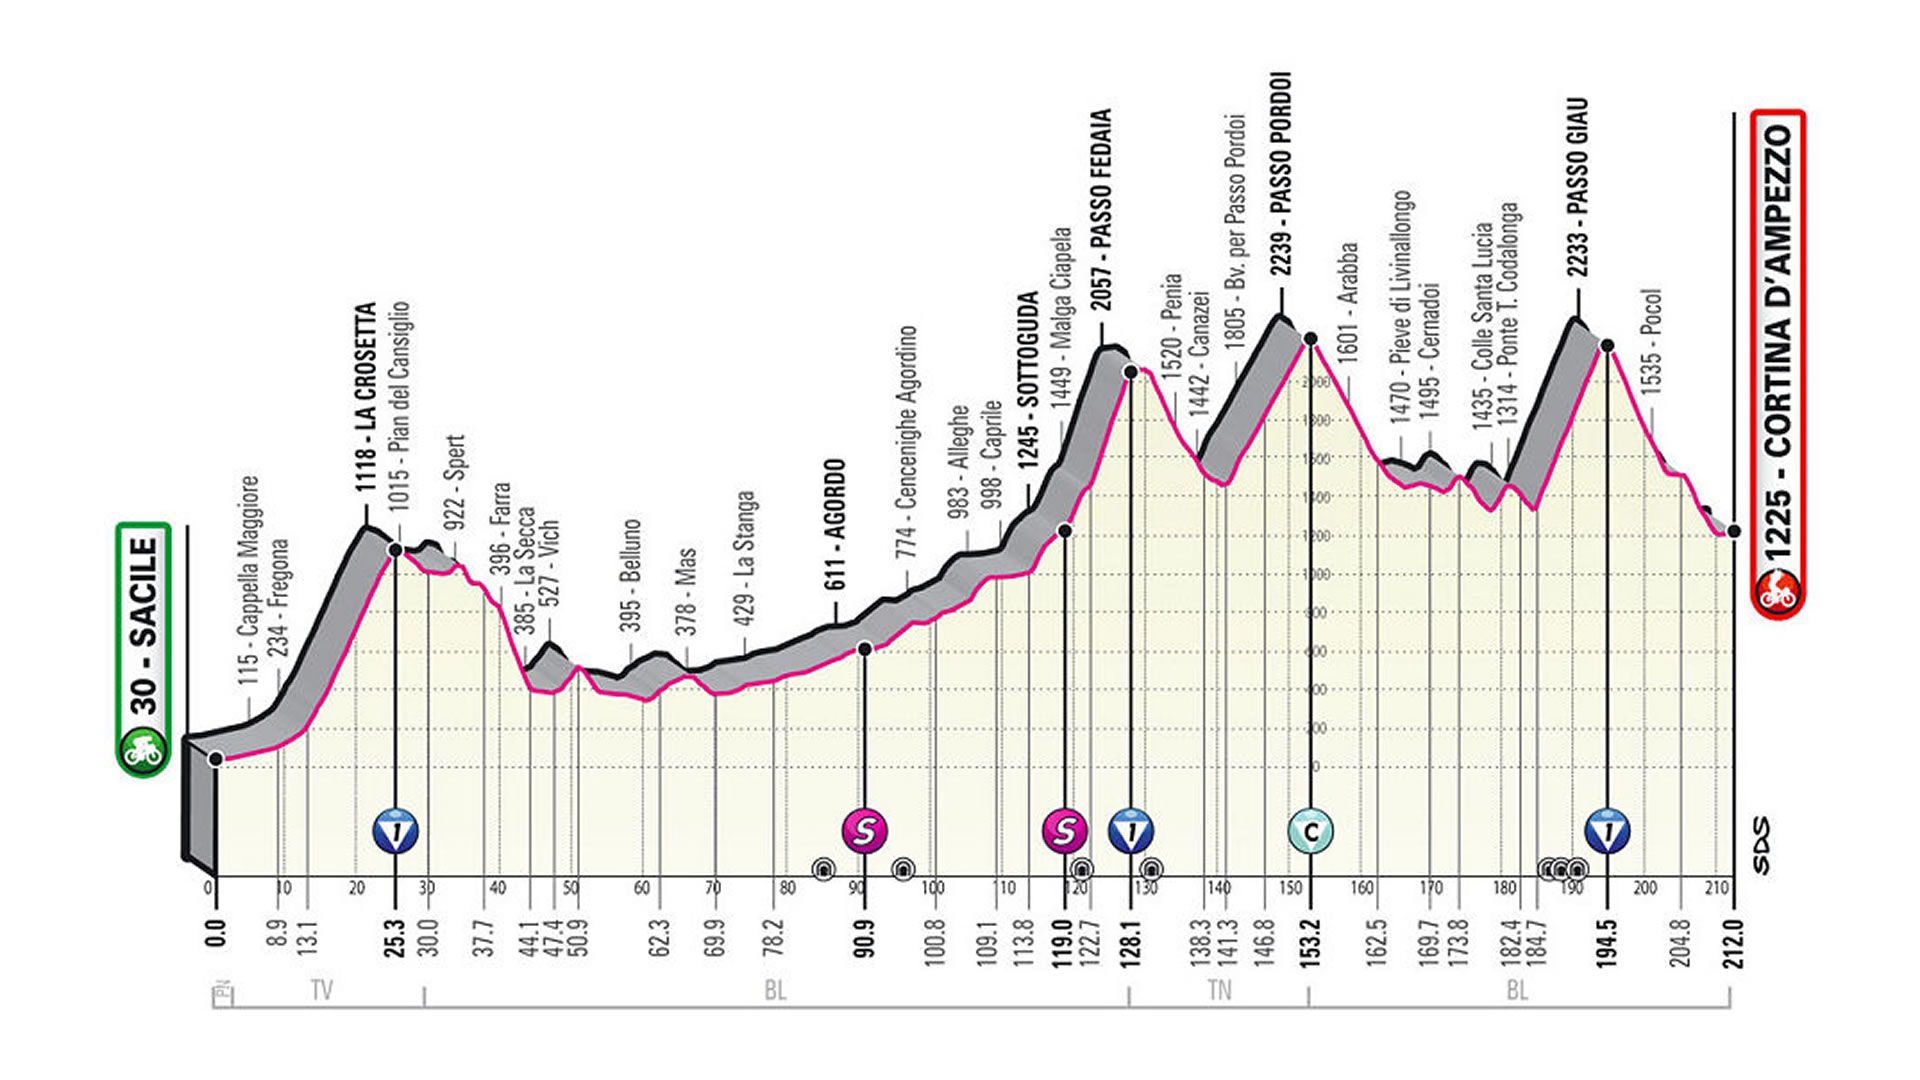 Etapa 16 de Giro de Italia 2021.